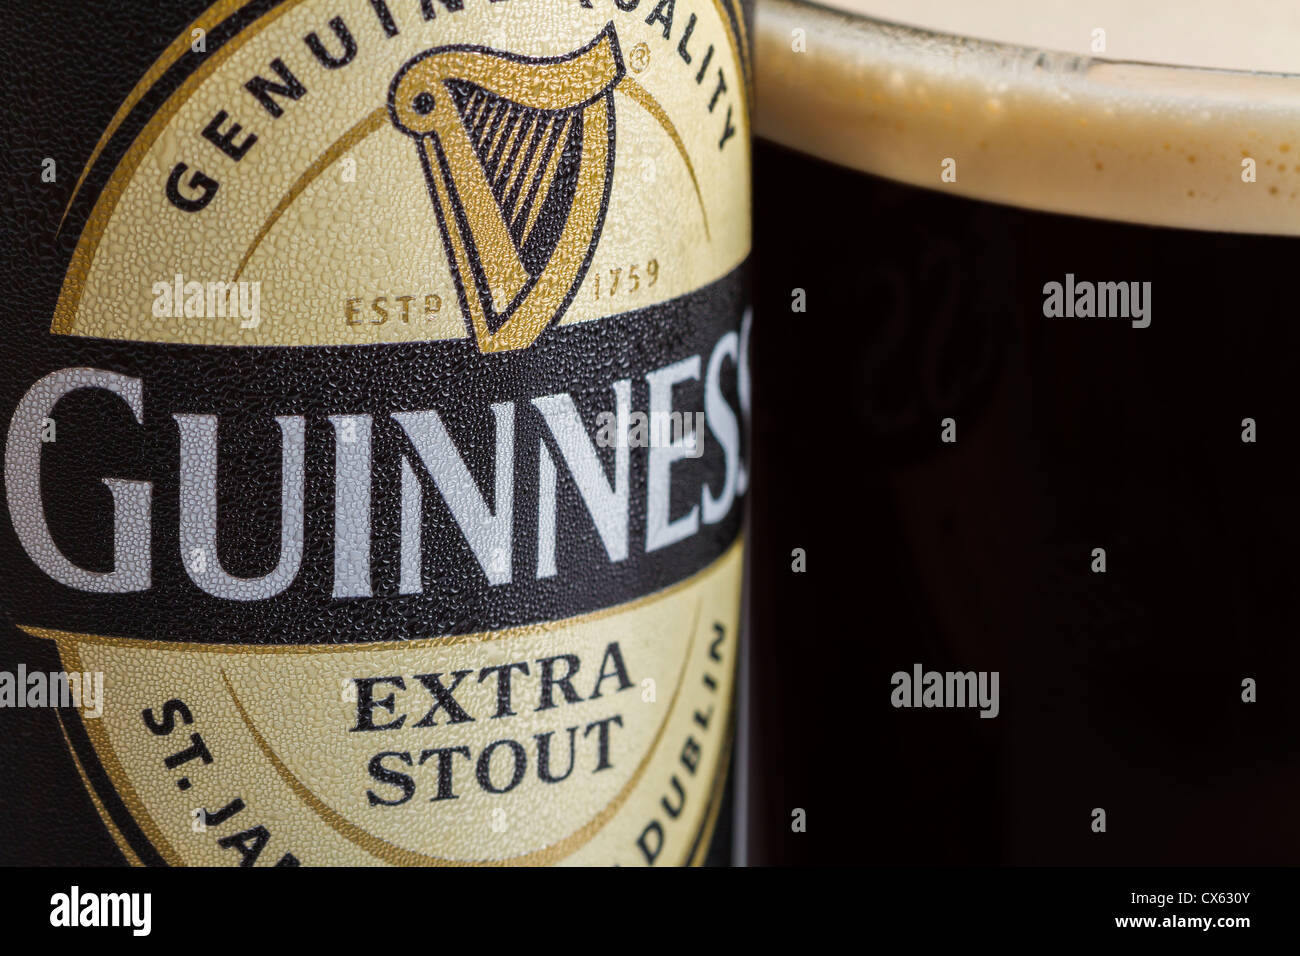 Dublin, Irland - 12. September 2012. Dies ist eine Studioaufnahme Produkt einer Dose Guinness stout neben einem Glas frisch gegossen Stockfoto